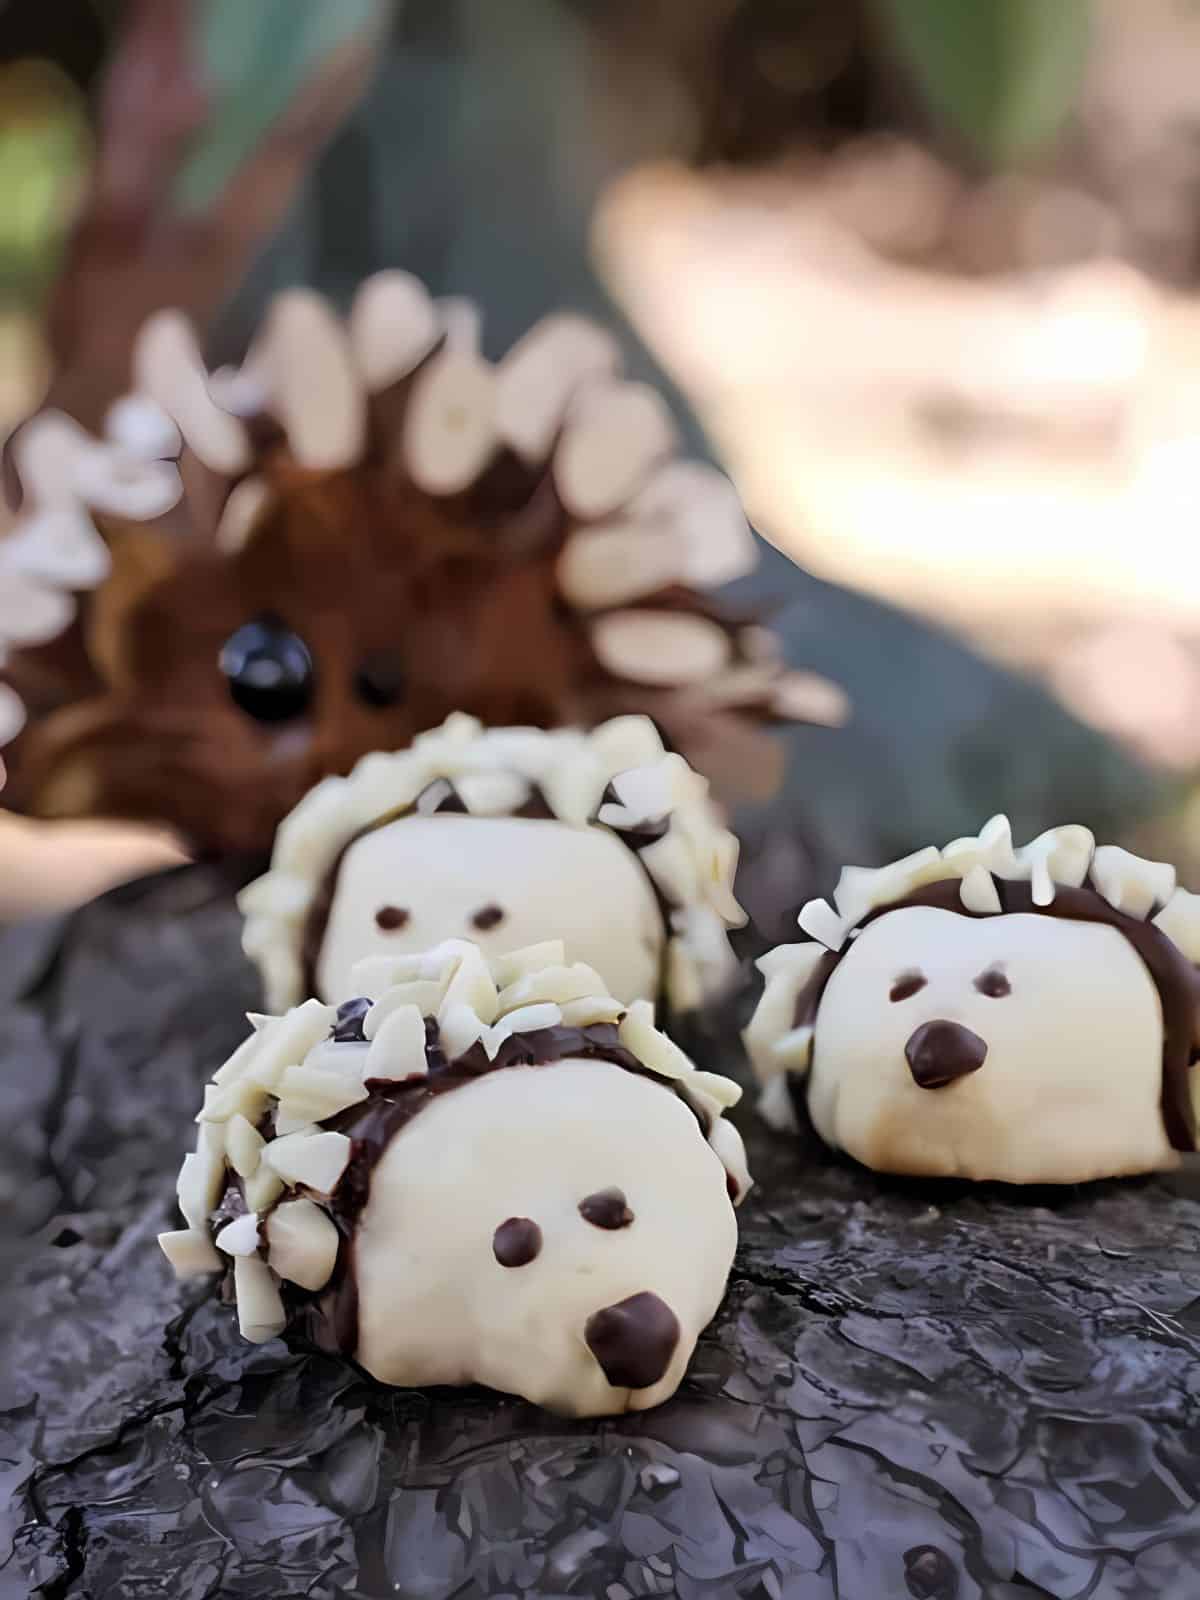 Hedgehog designed cookies.